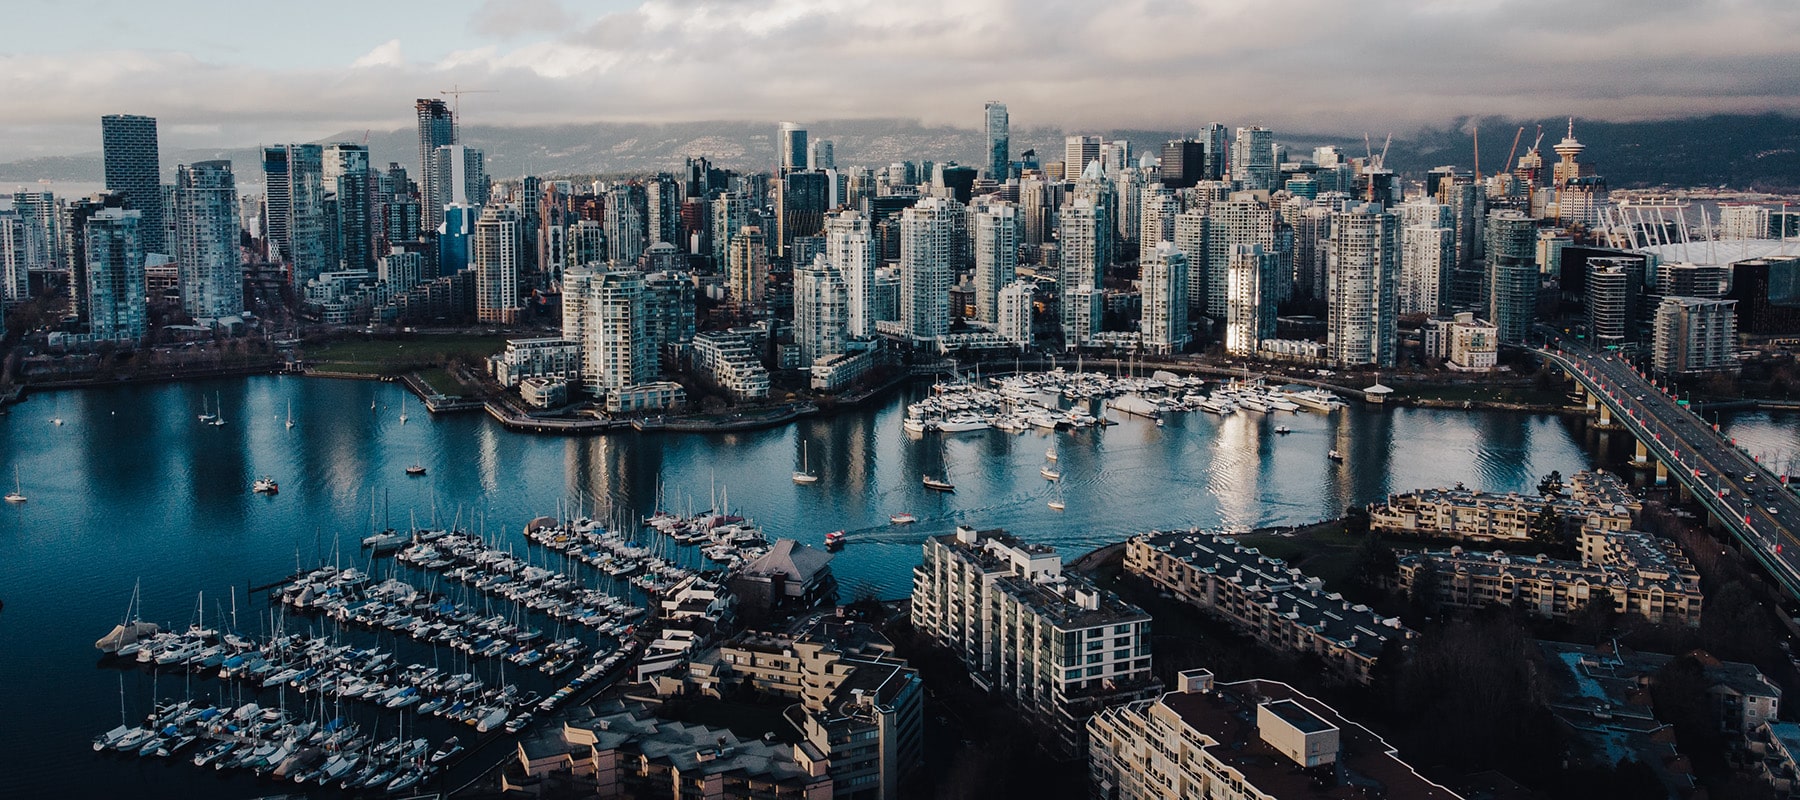 Vue de la ligne d'horizon de Vancouver Canada, la ville sur laquelle se concentre cette entrée de journal de voyage.